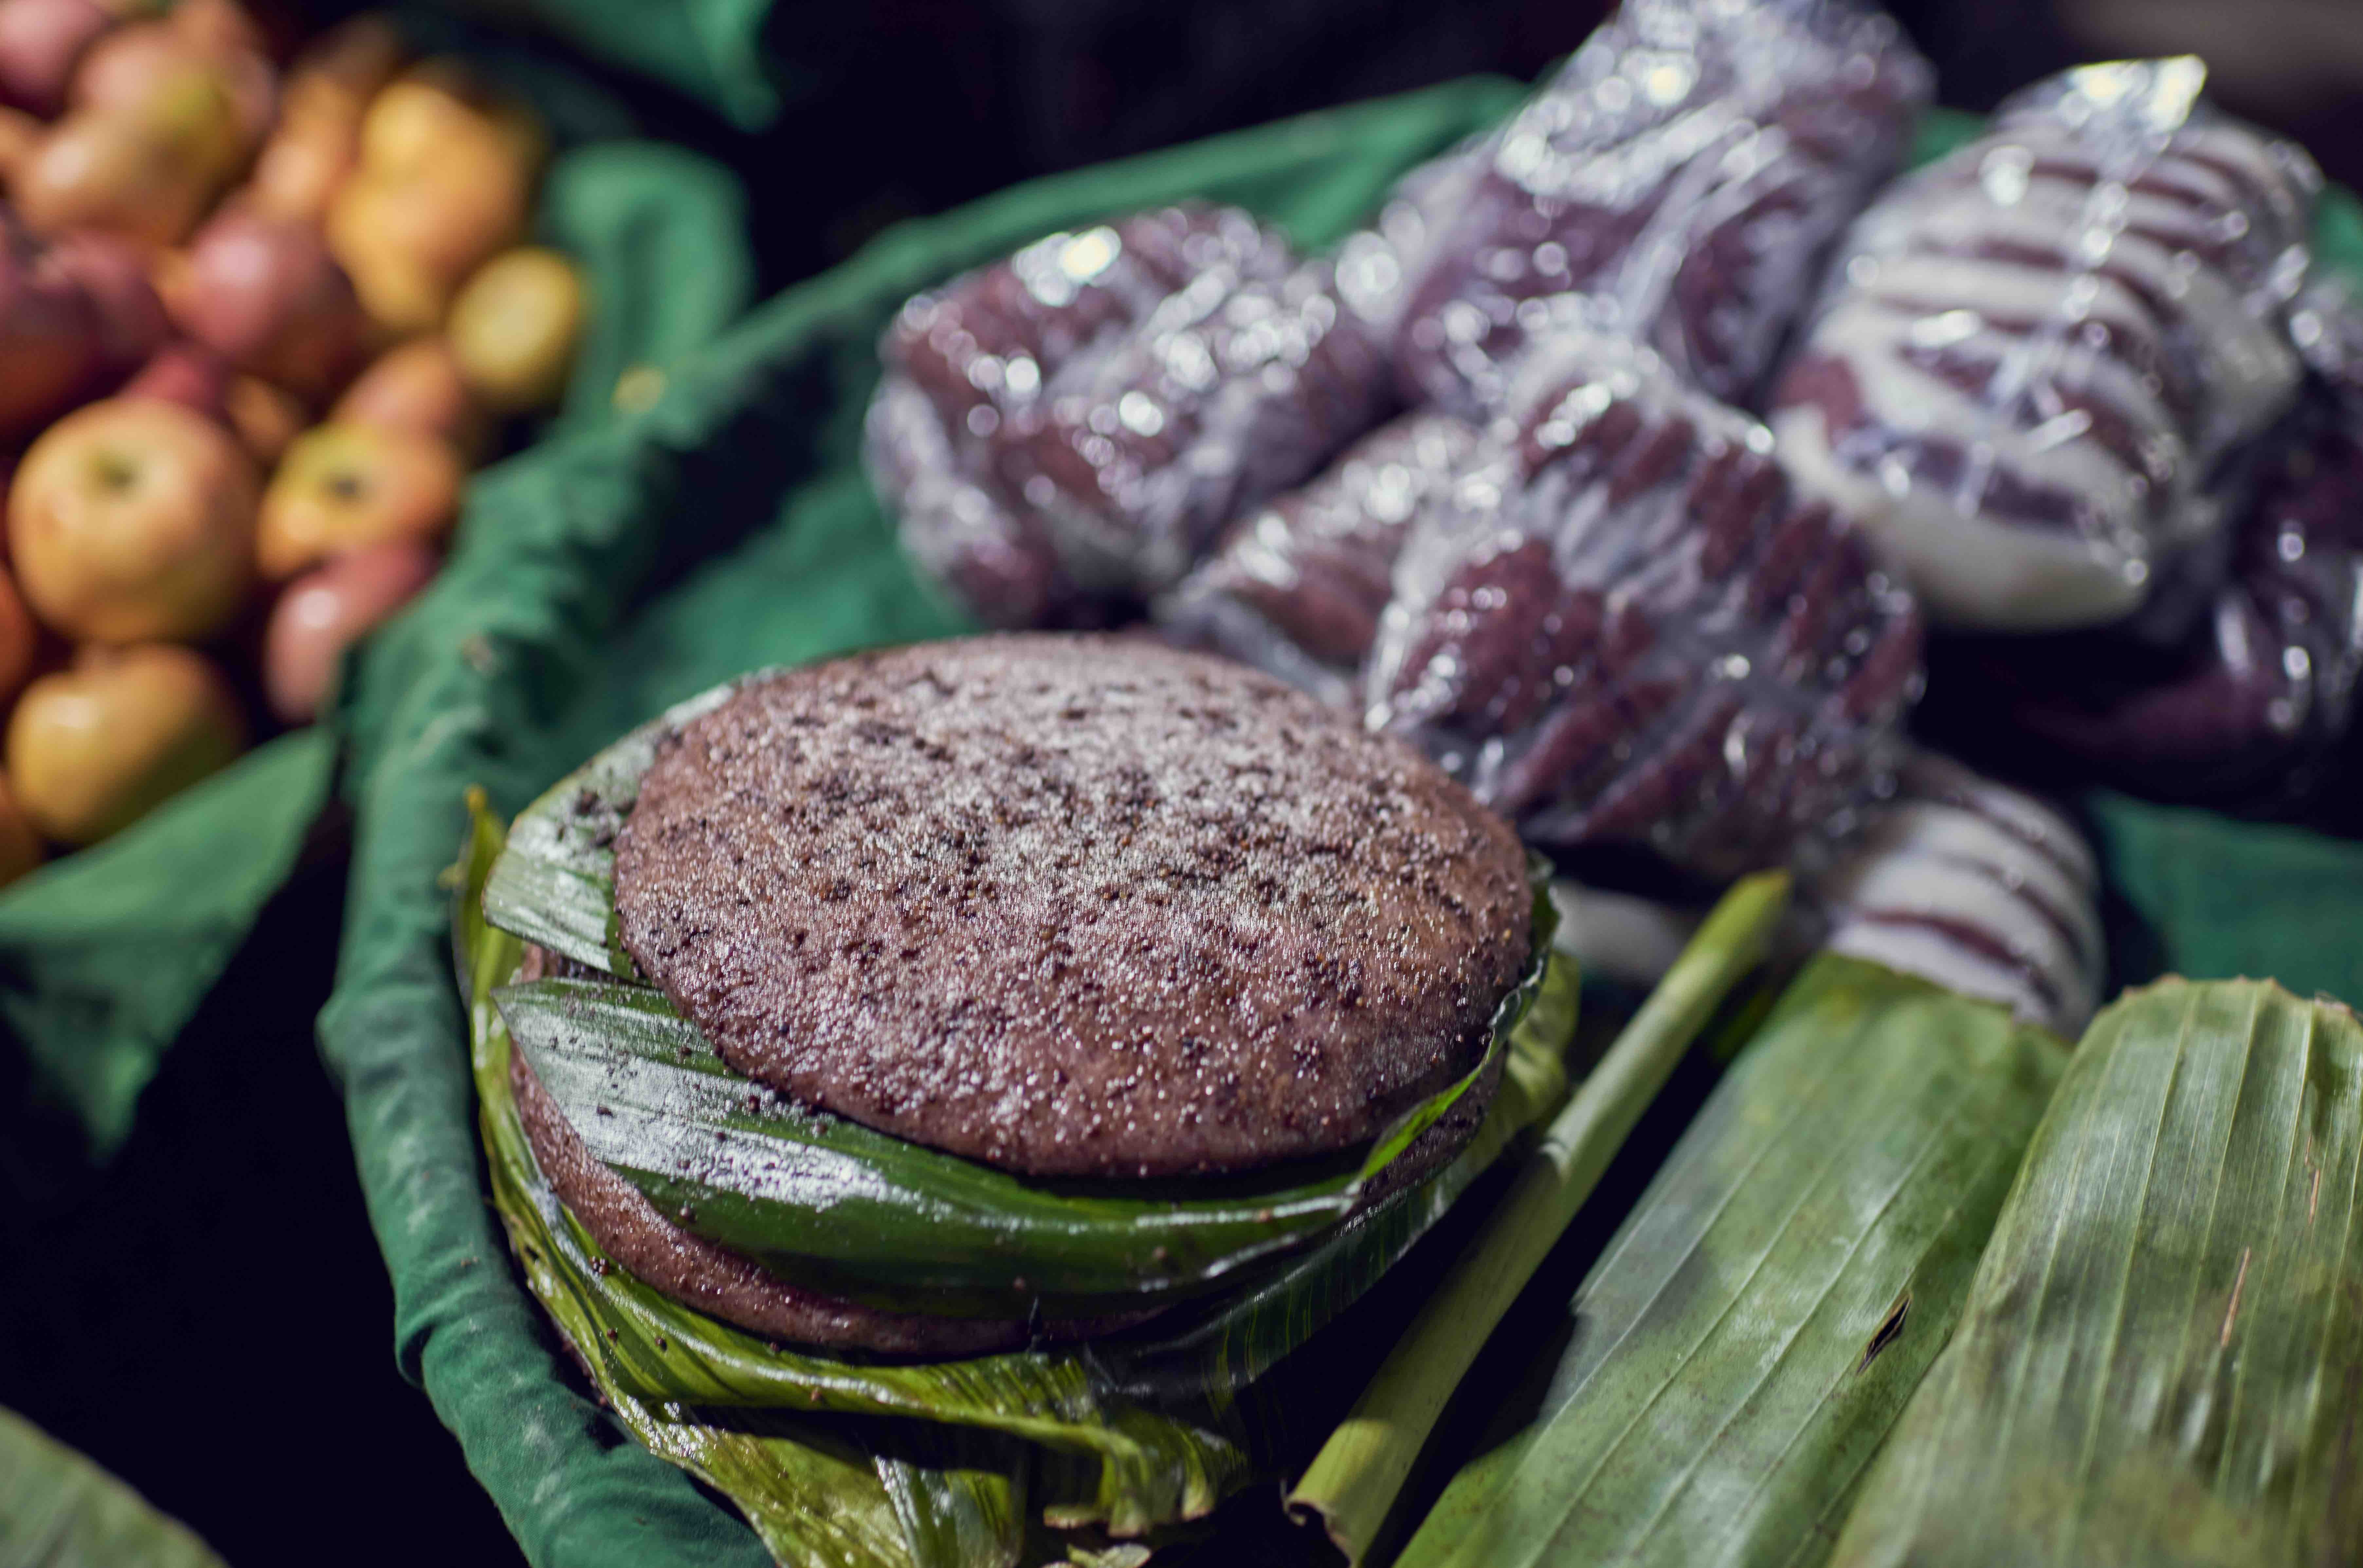 流传于缅甸街头传统小吃,与中国民间美食相似,传承古老民俗文化